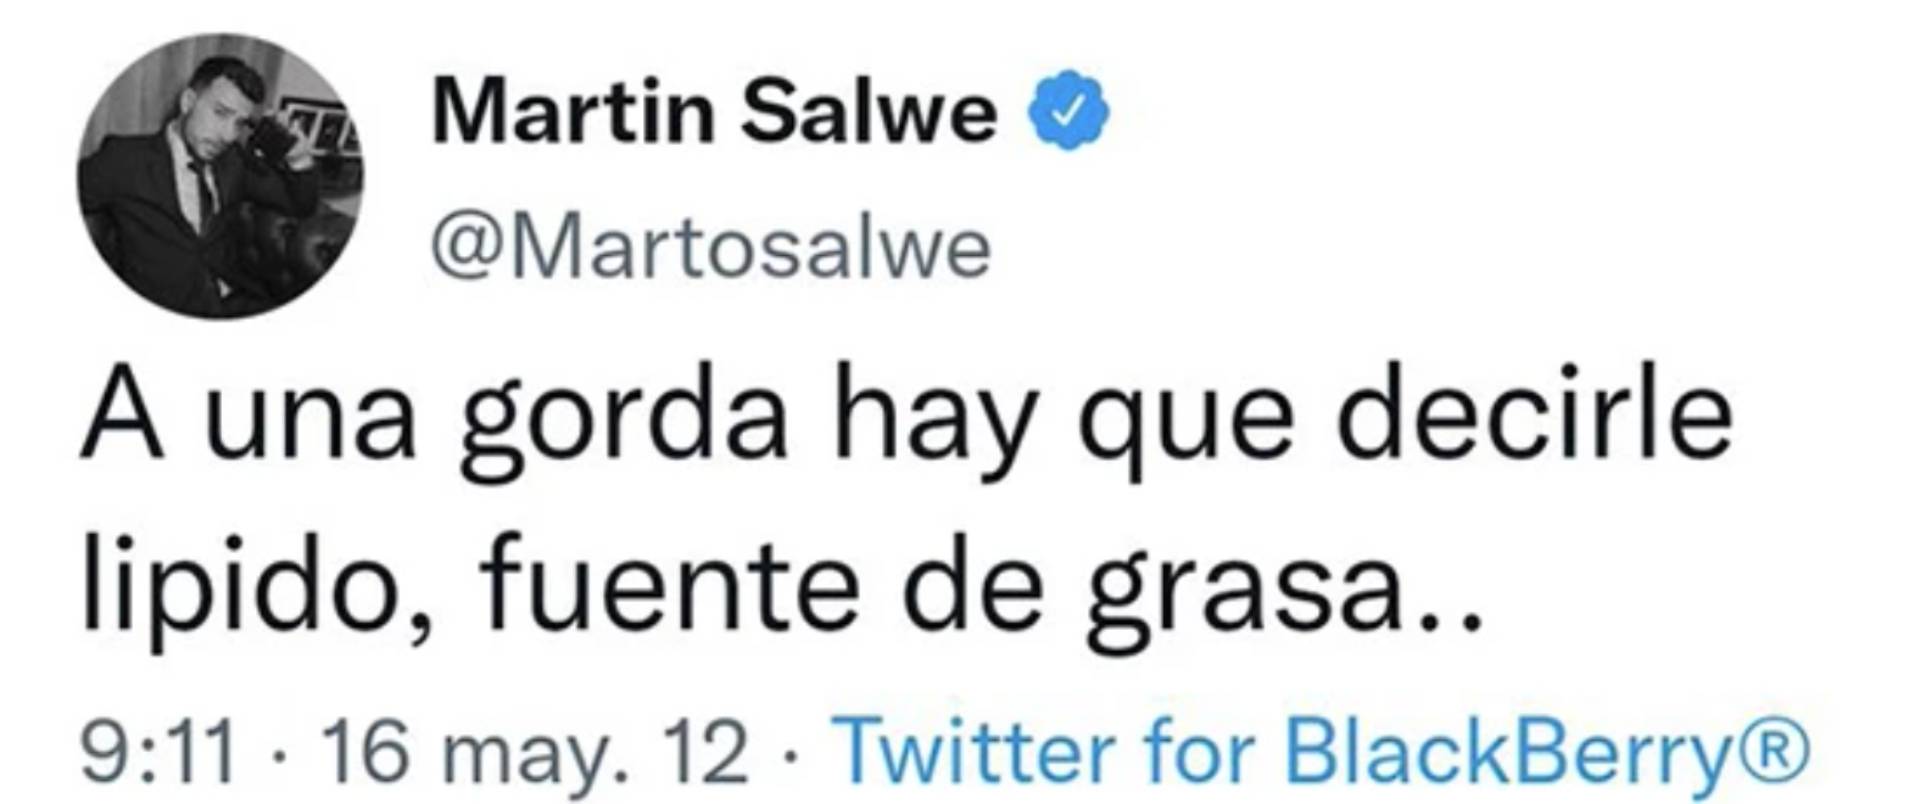 Los mensajes polémicos de Martín Salwe